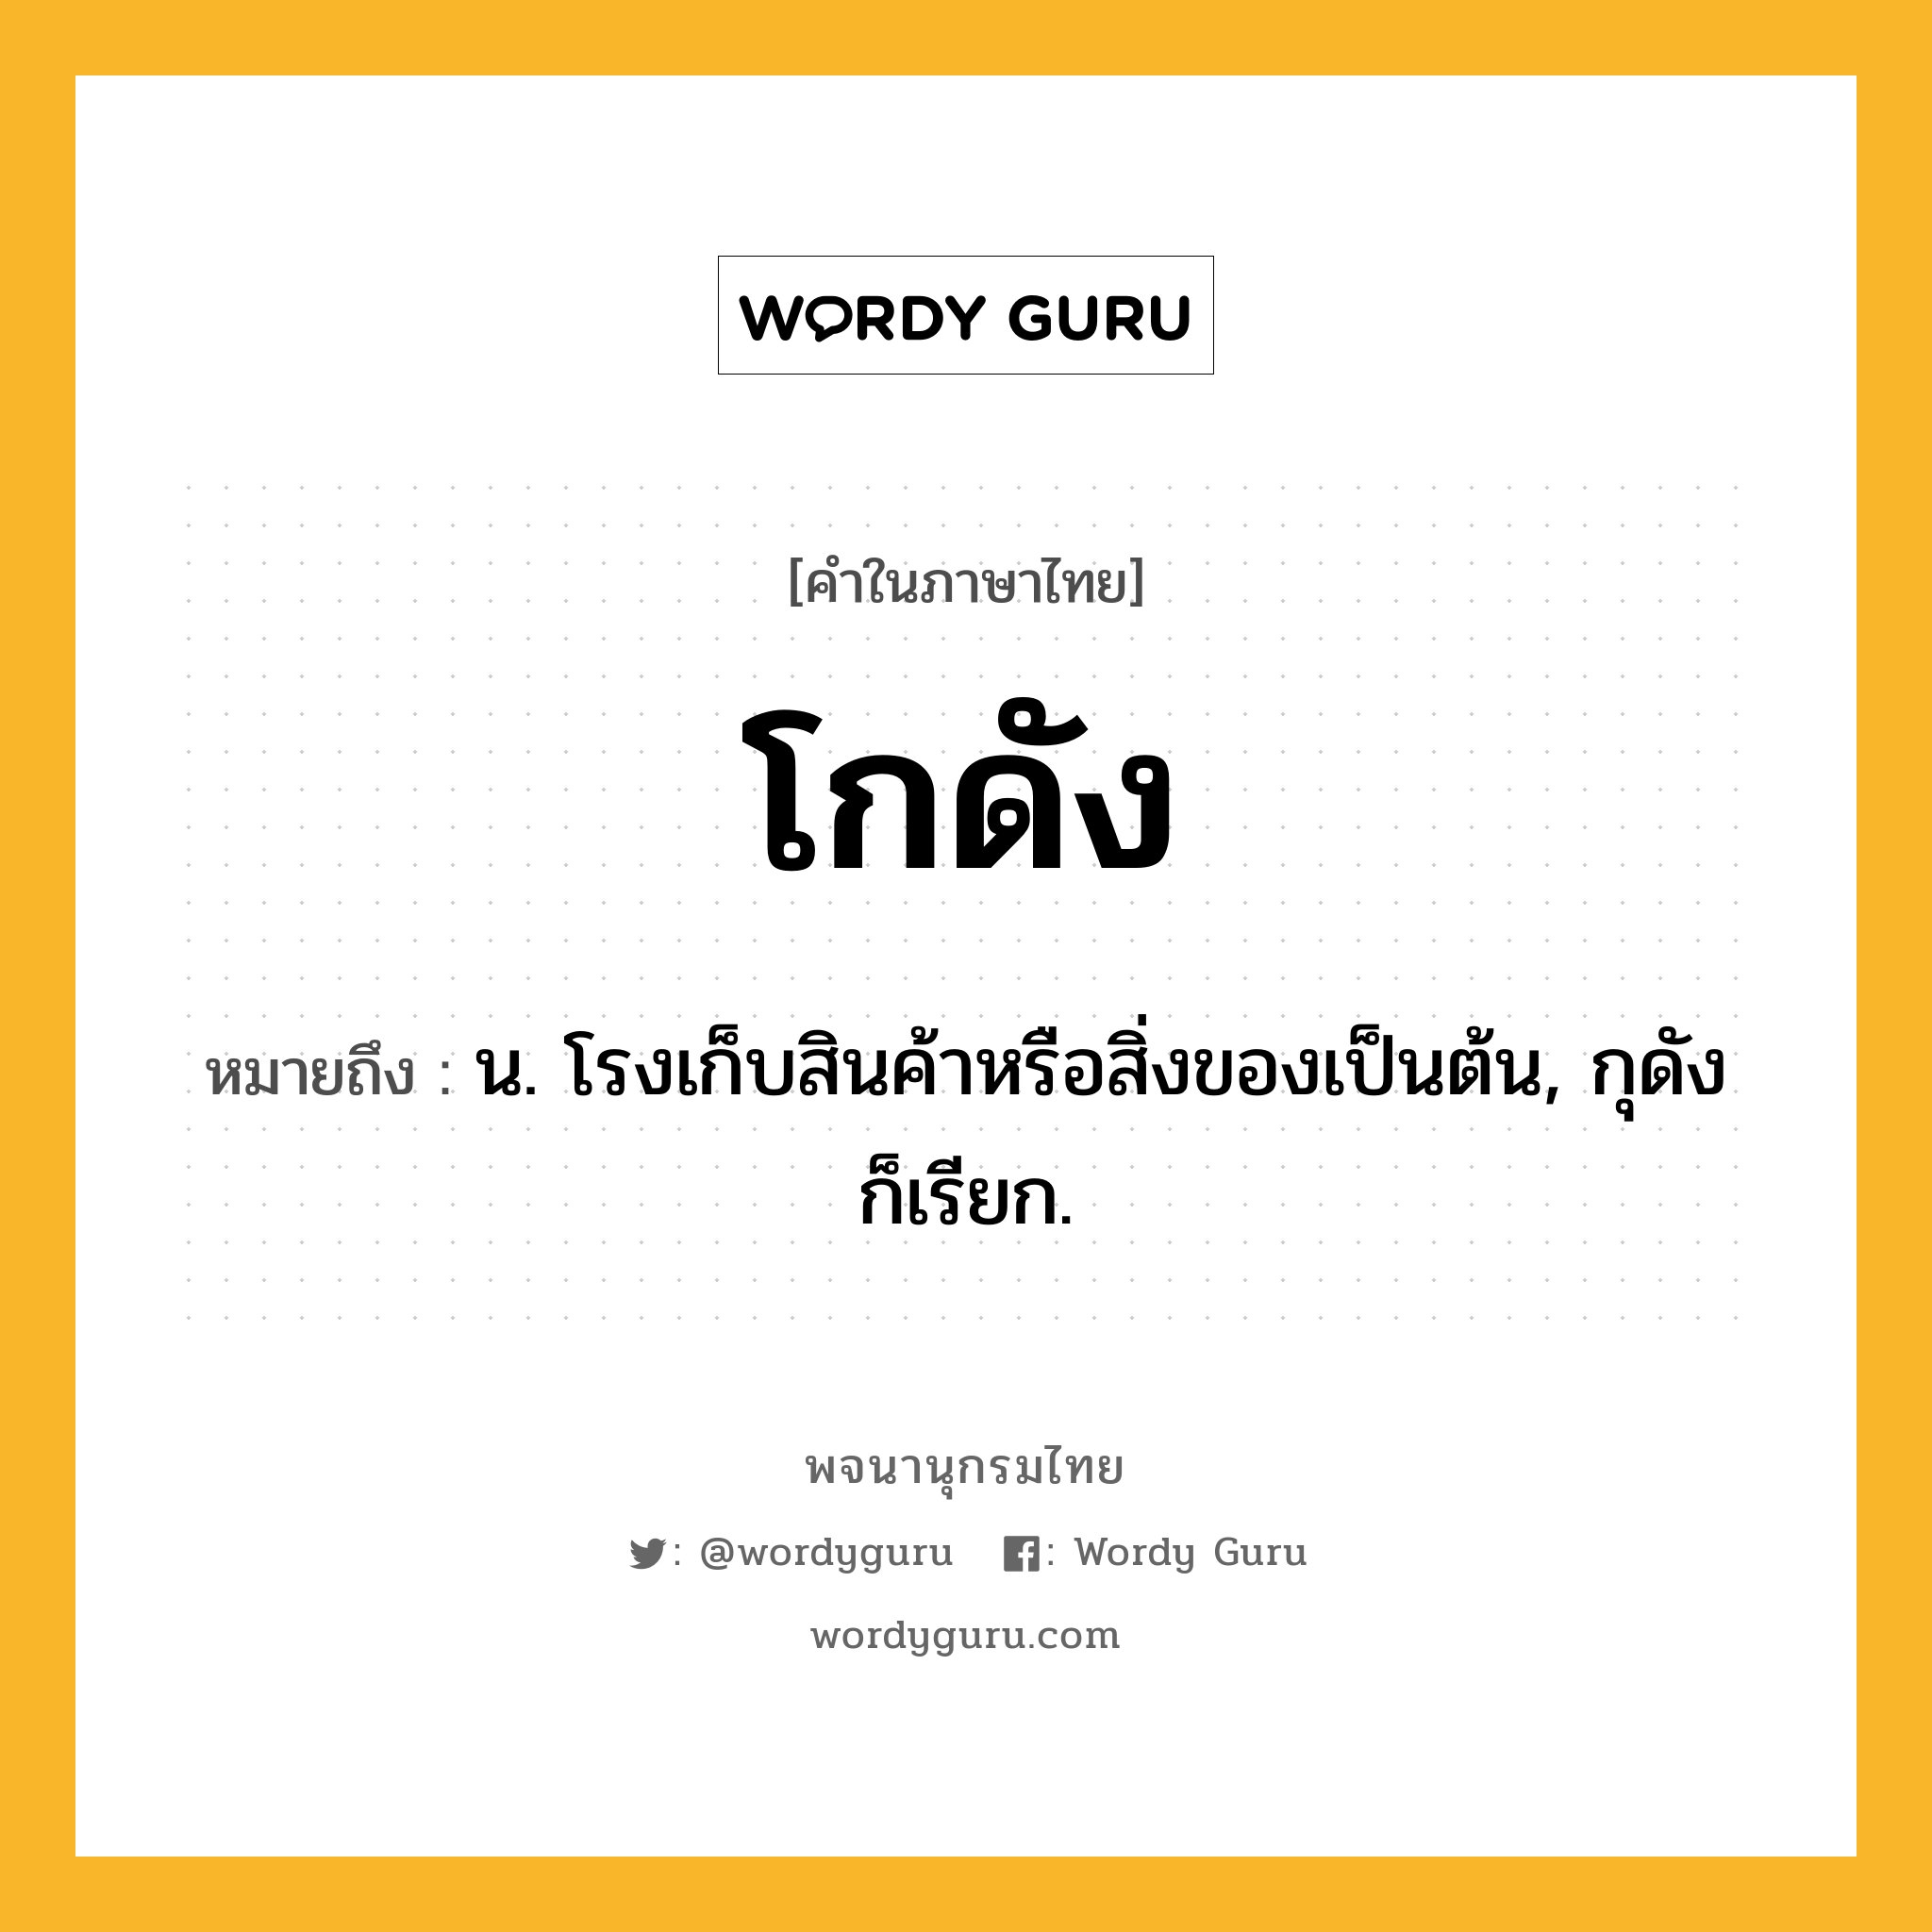 โกดัง ความหมาย หมายถึงอะไร?, คำในภาษาไทย โกดัง หมายถึง น. โรงเก็บสินค้าหรือสิ่งของเป็นต้น, กุดัง ก็เรียก.